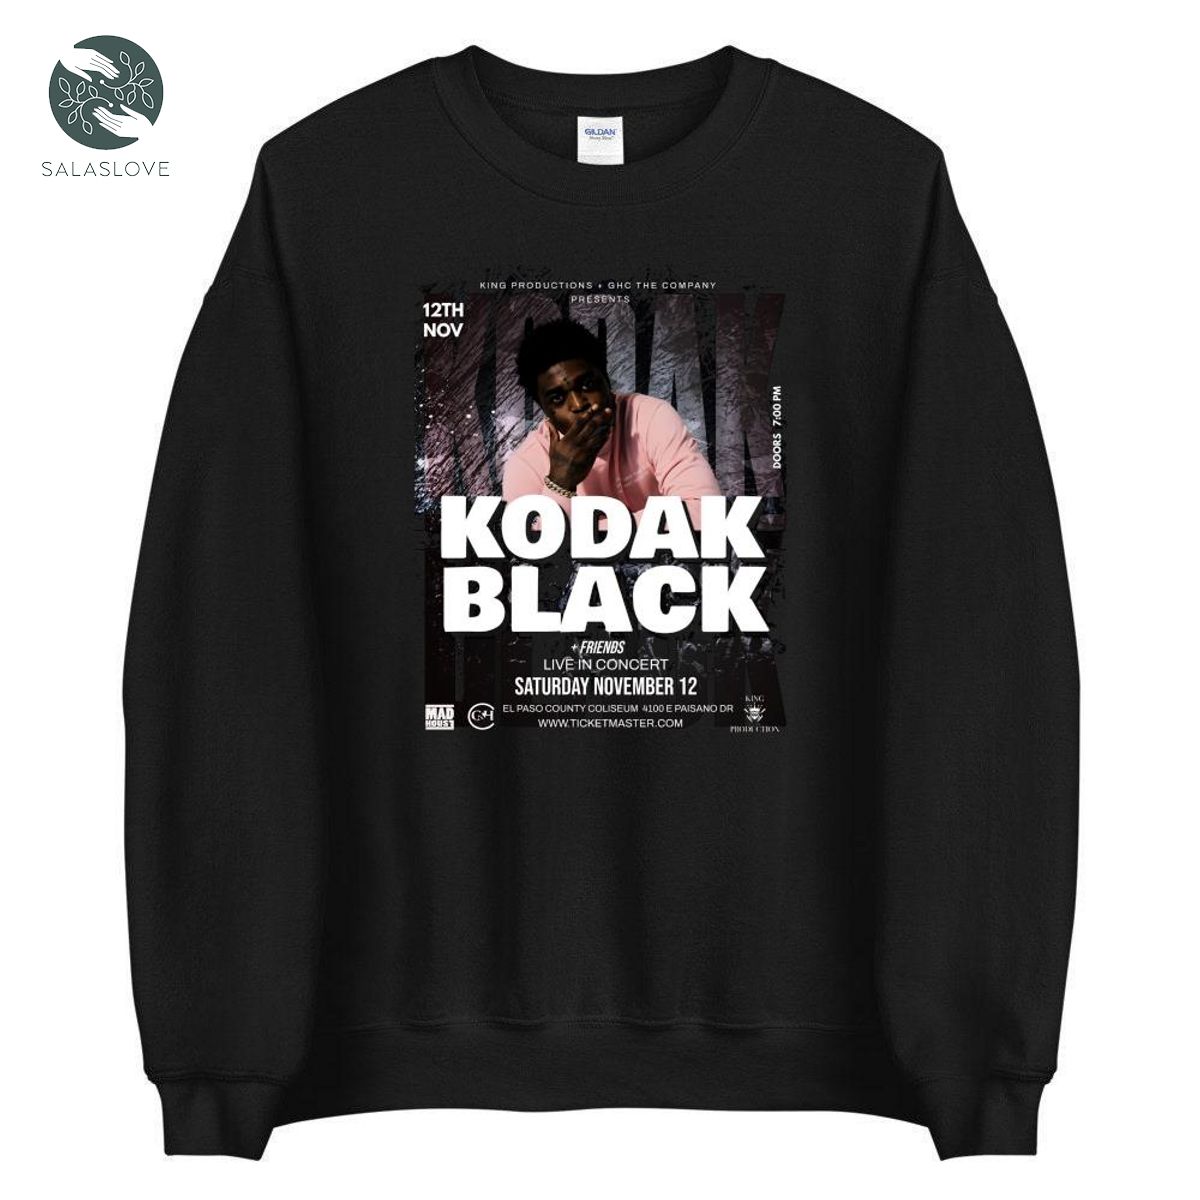 Kodak Black Live In Concert Music Unisex Shirt Gift For Fan